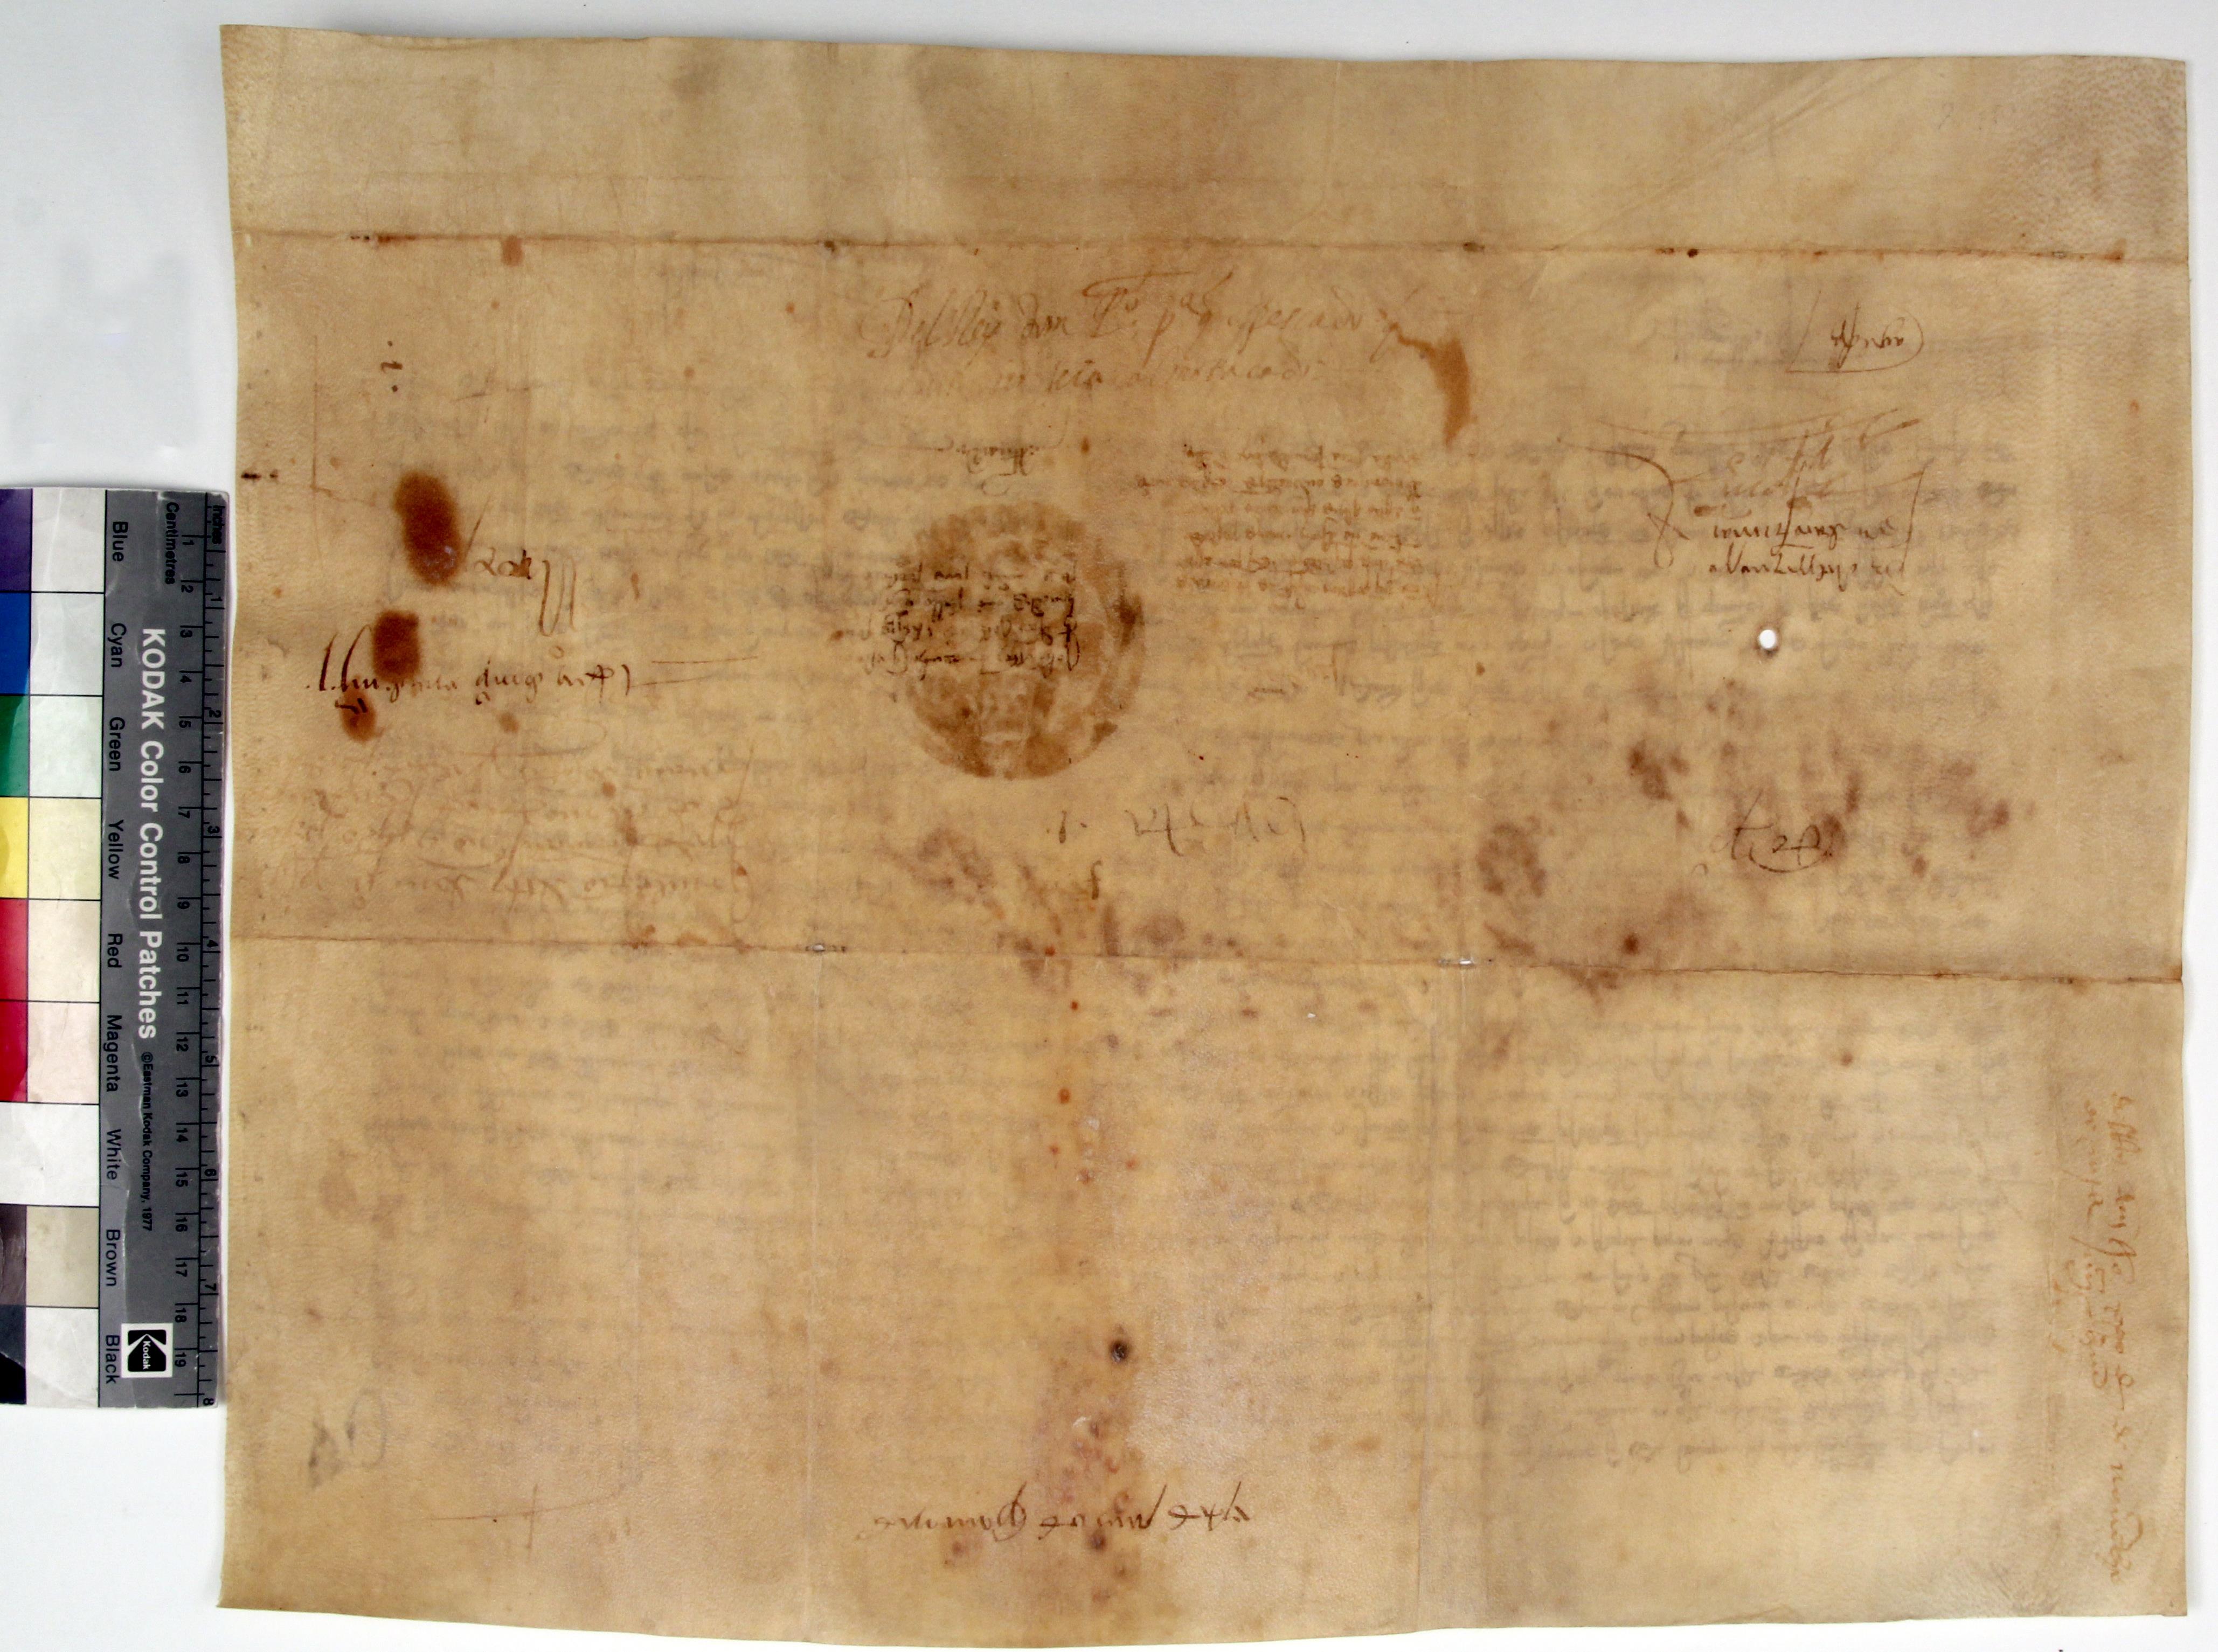 [Carta de D. Pedro I concedendo permissão ao concelho do Porto para que os pescadores recebam dos regatões dinheiro sob certas condições]